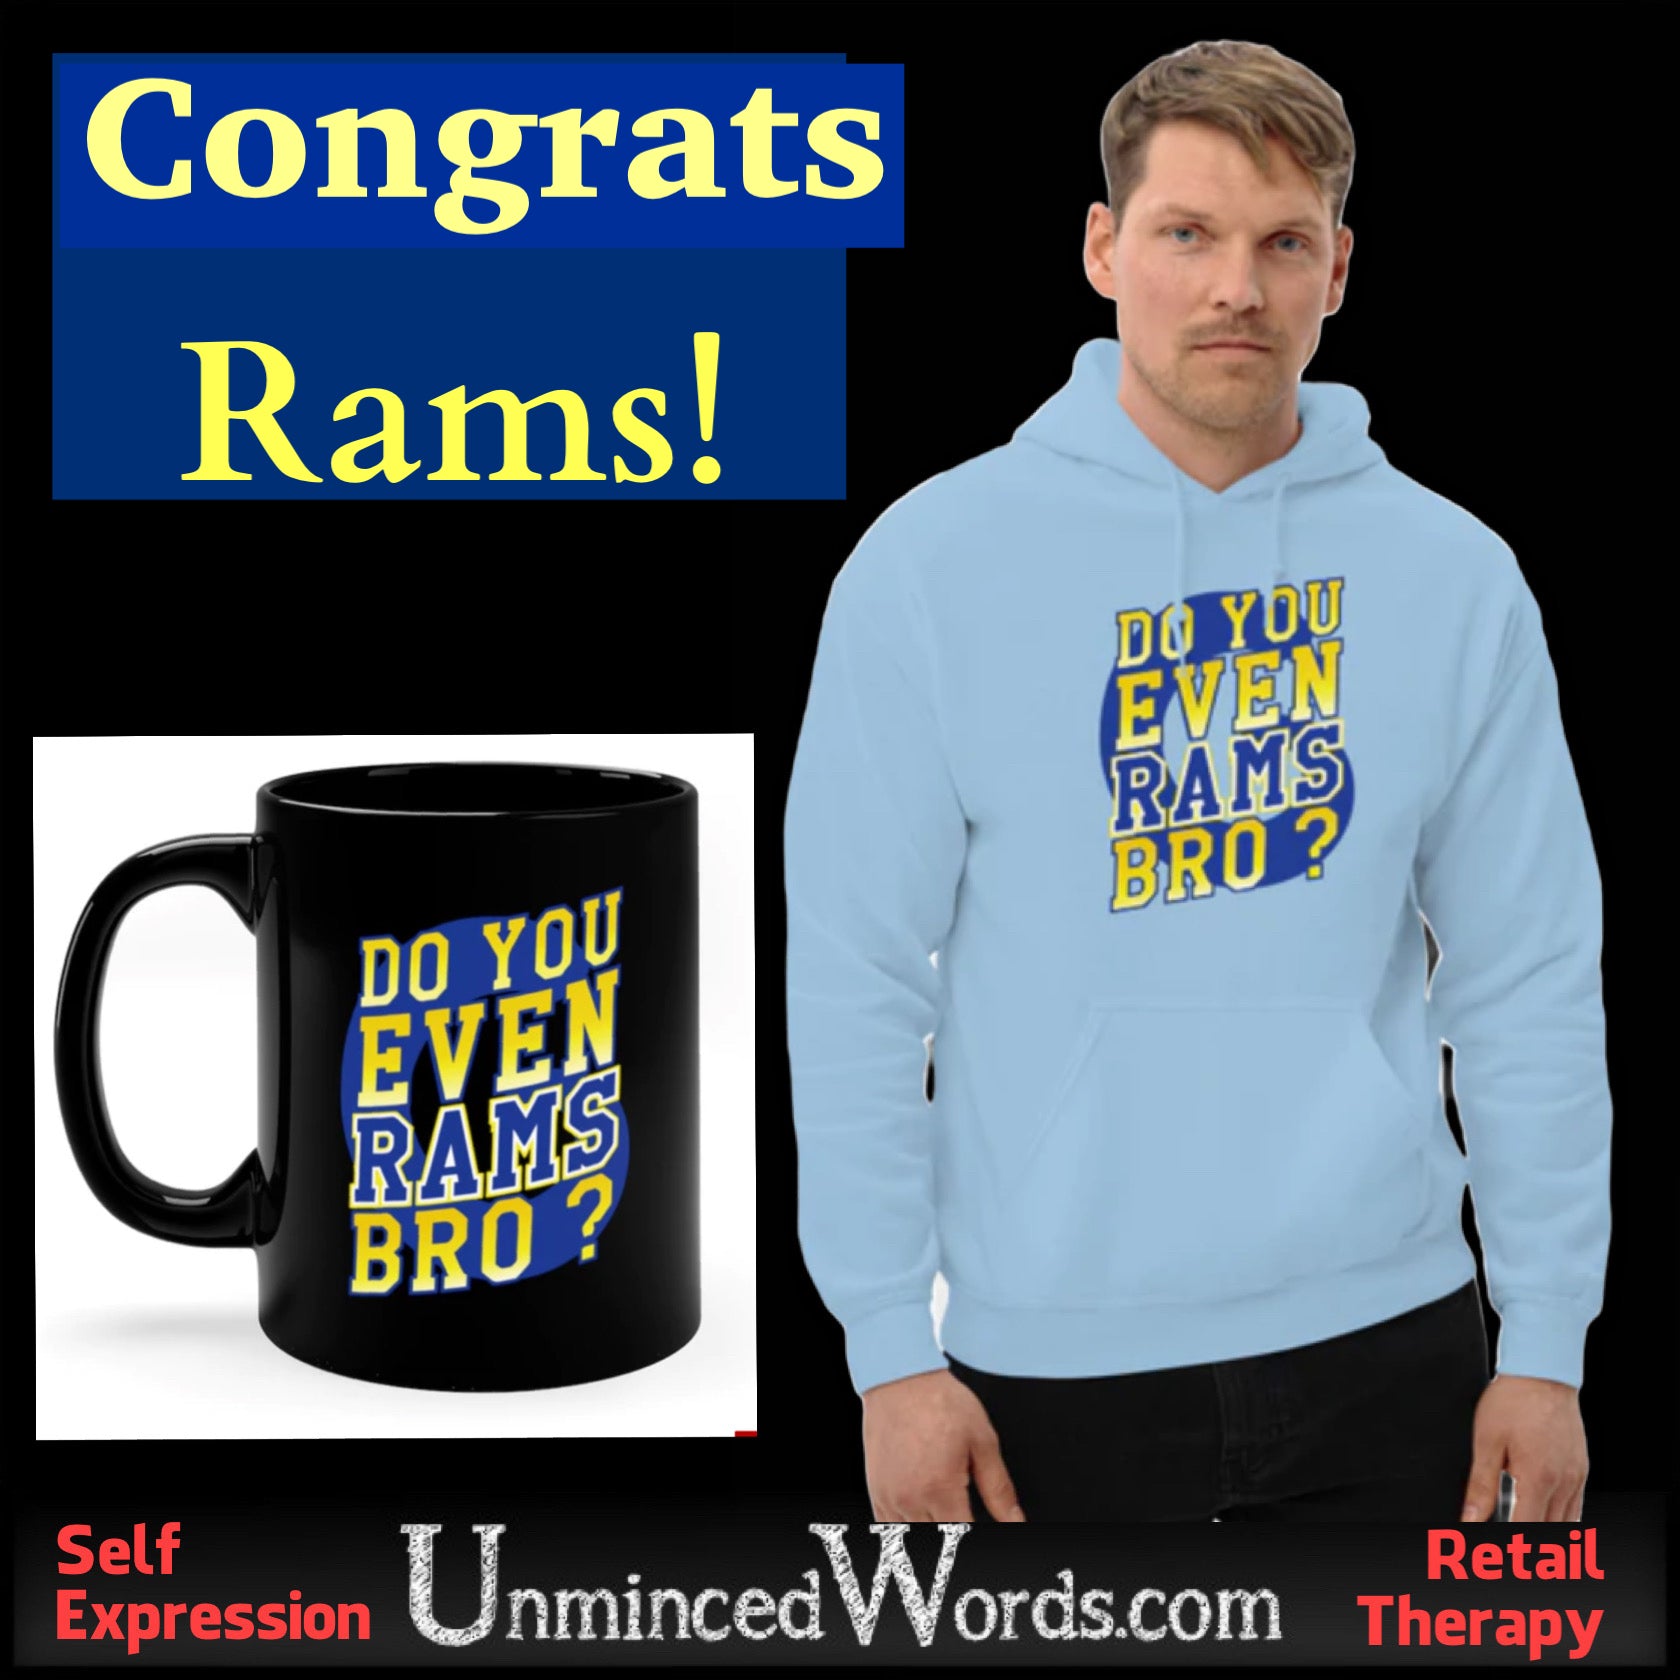 Congrats Rams!